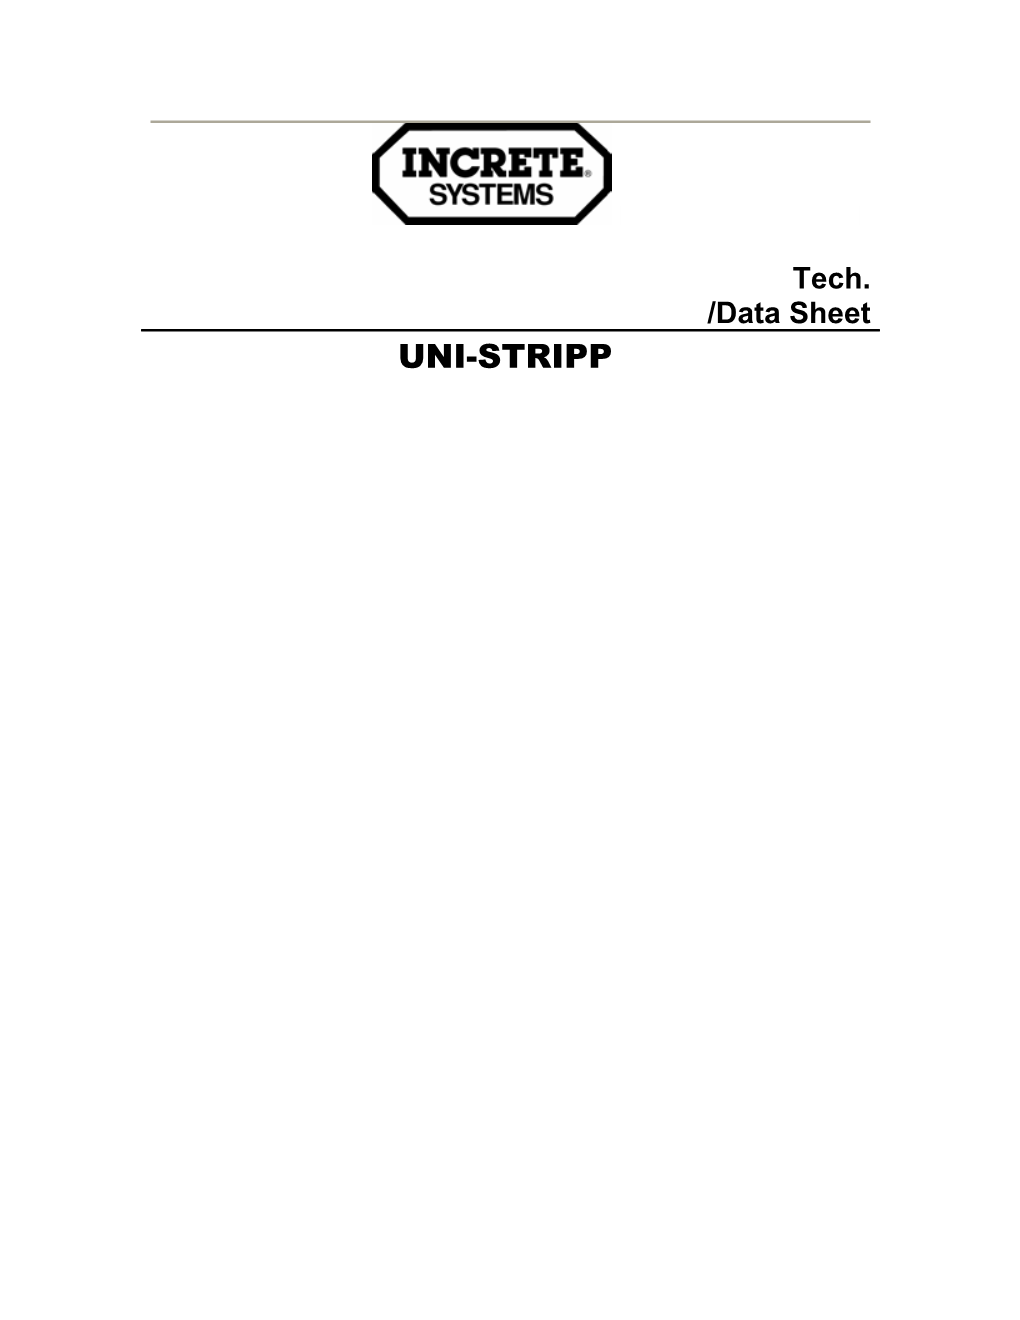 Tech. /Data Sheet s2